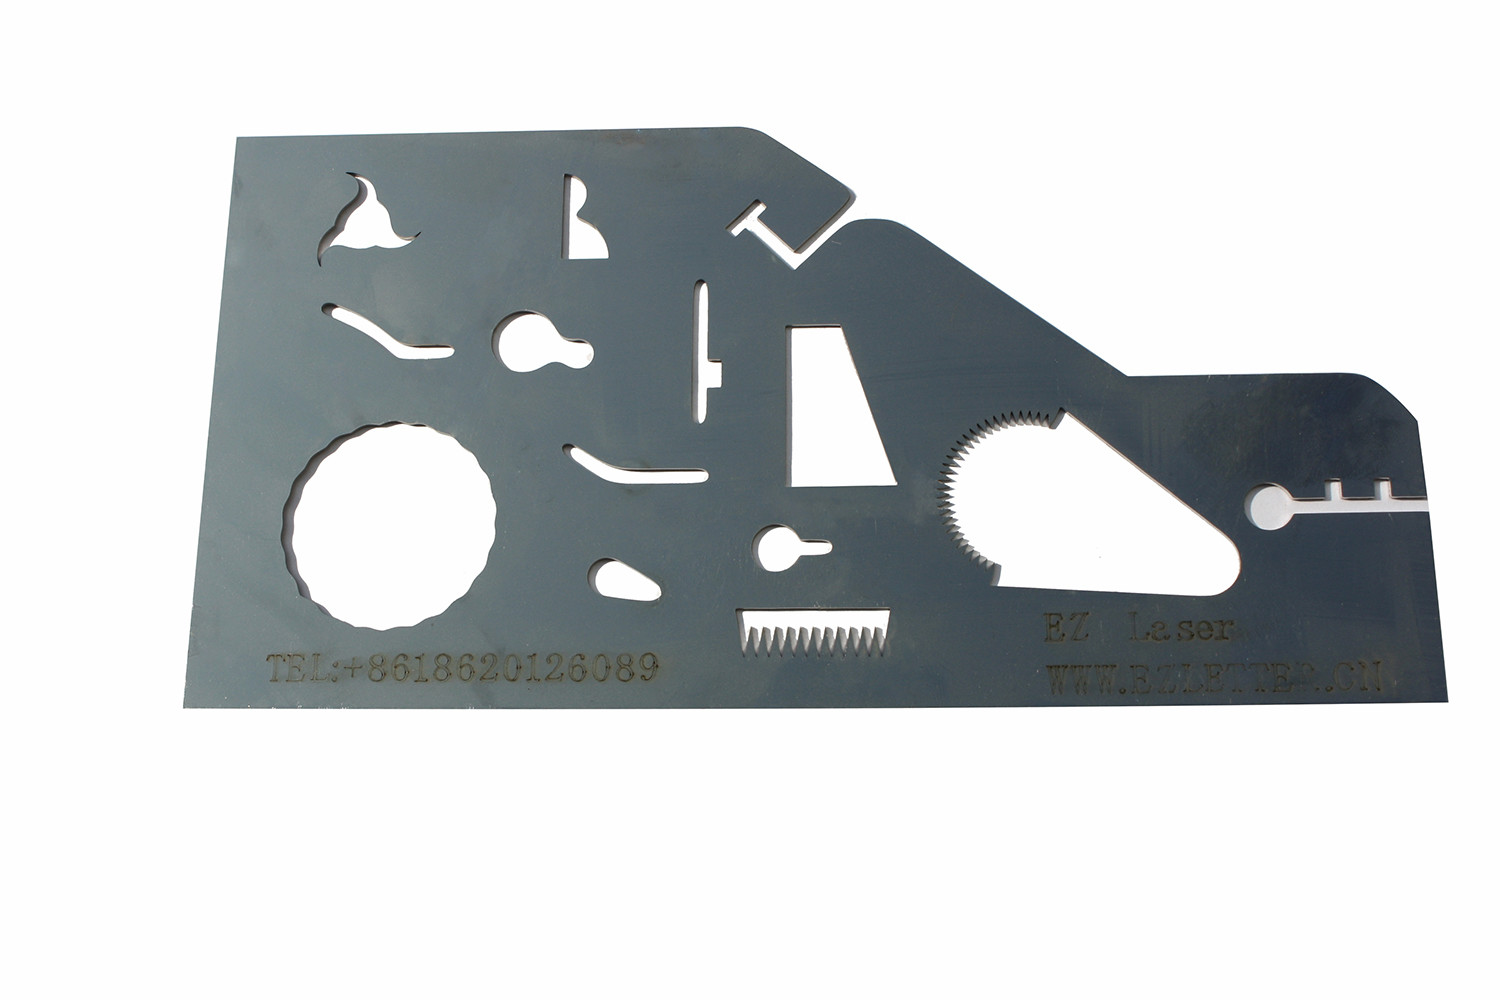  EZCNC Fiber Laser Sheet Metal Cutter GL510 IPG Laser/WSX laser cutting head Manufactures